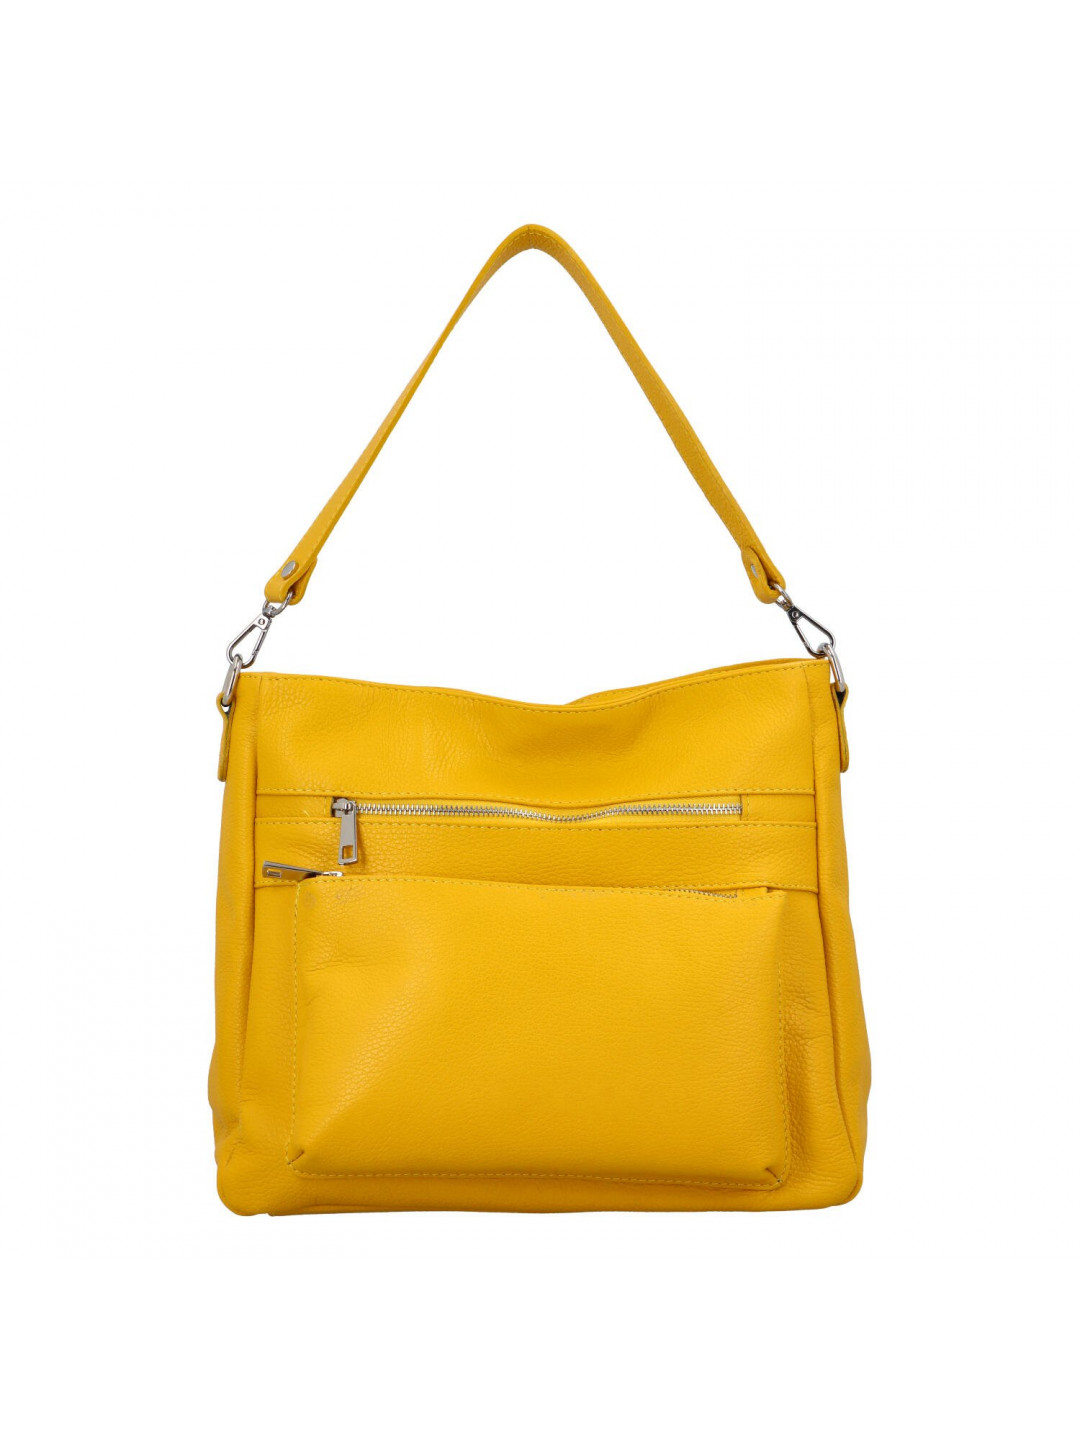 Dámská kožená kabelka přes rameno žlutá – Delami Jody